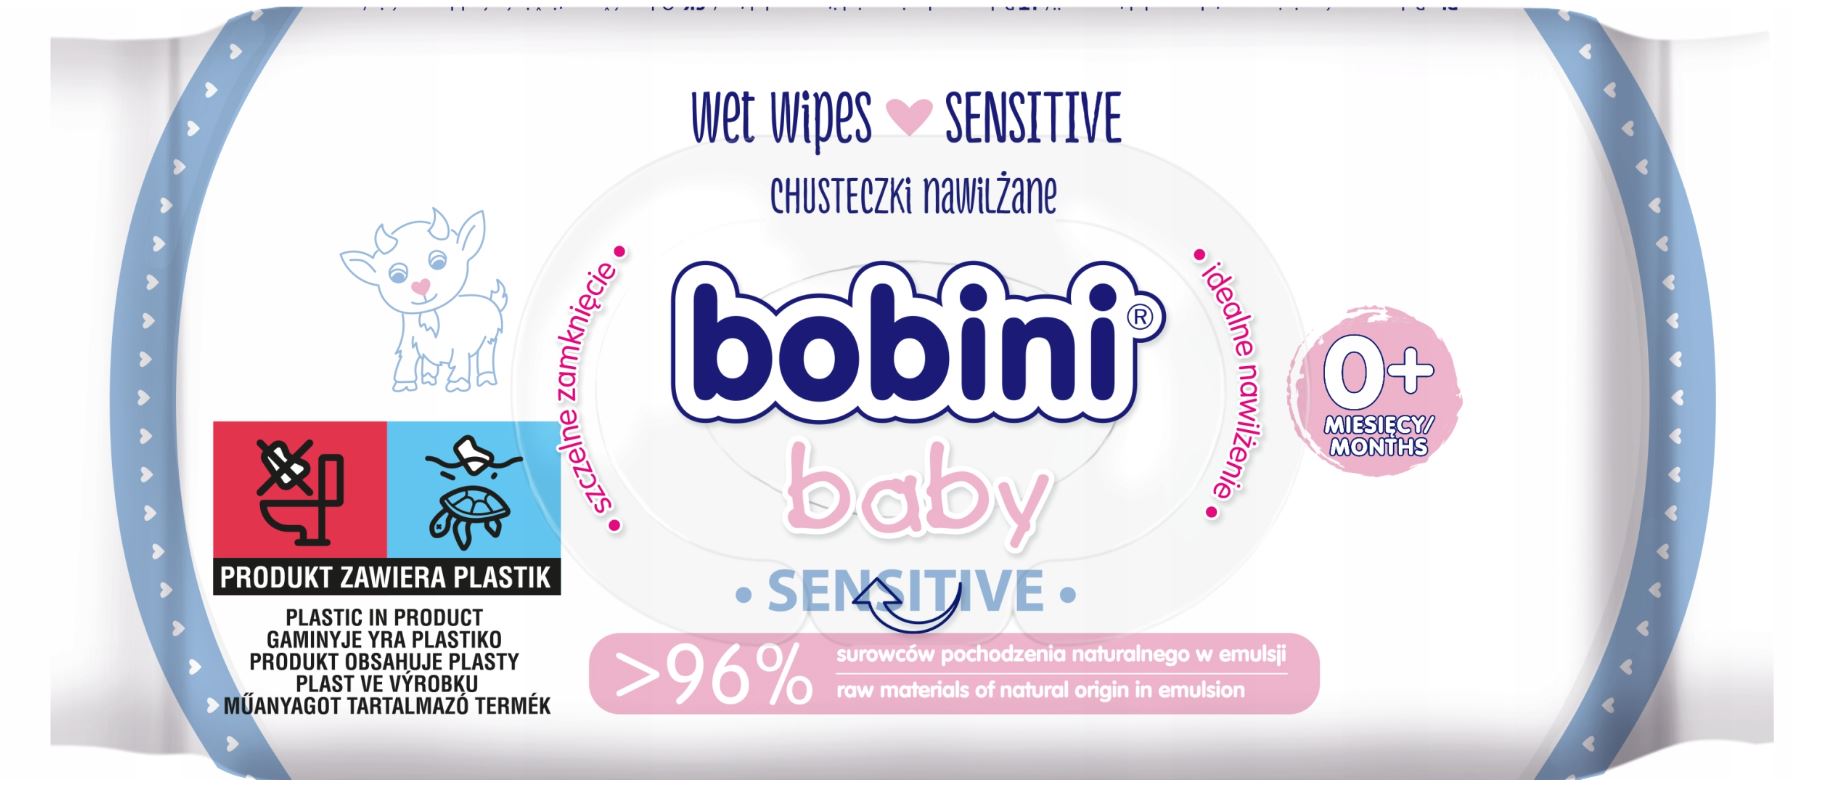 Bobini Baby Sensitive, chusteczki nawilżane dla dzieci, 63sztuk